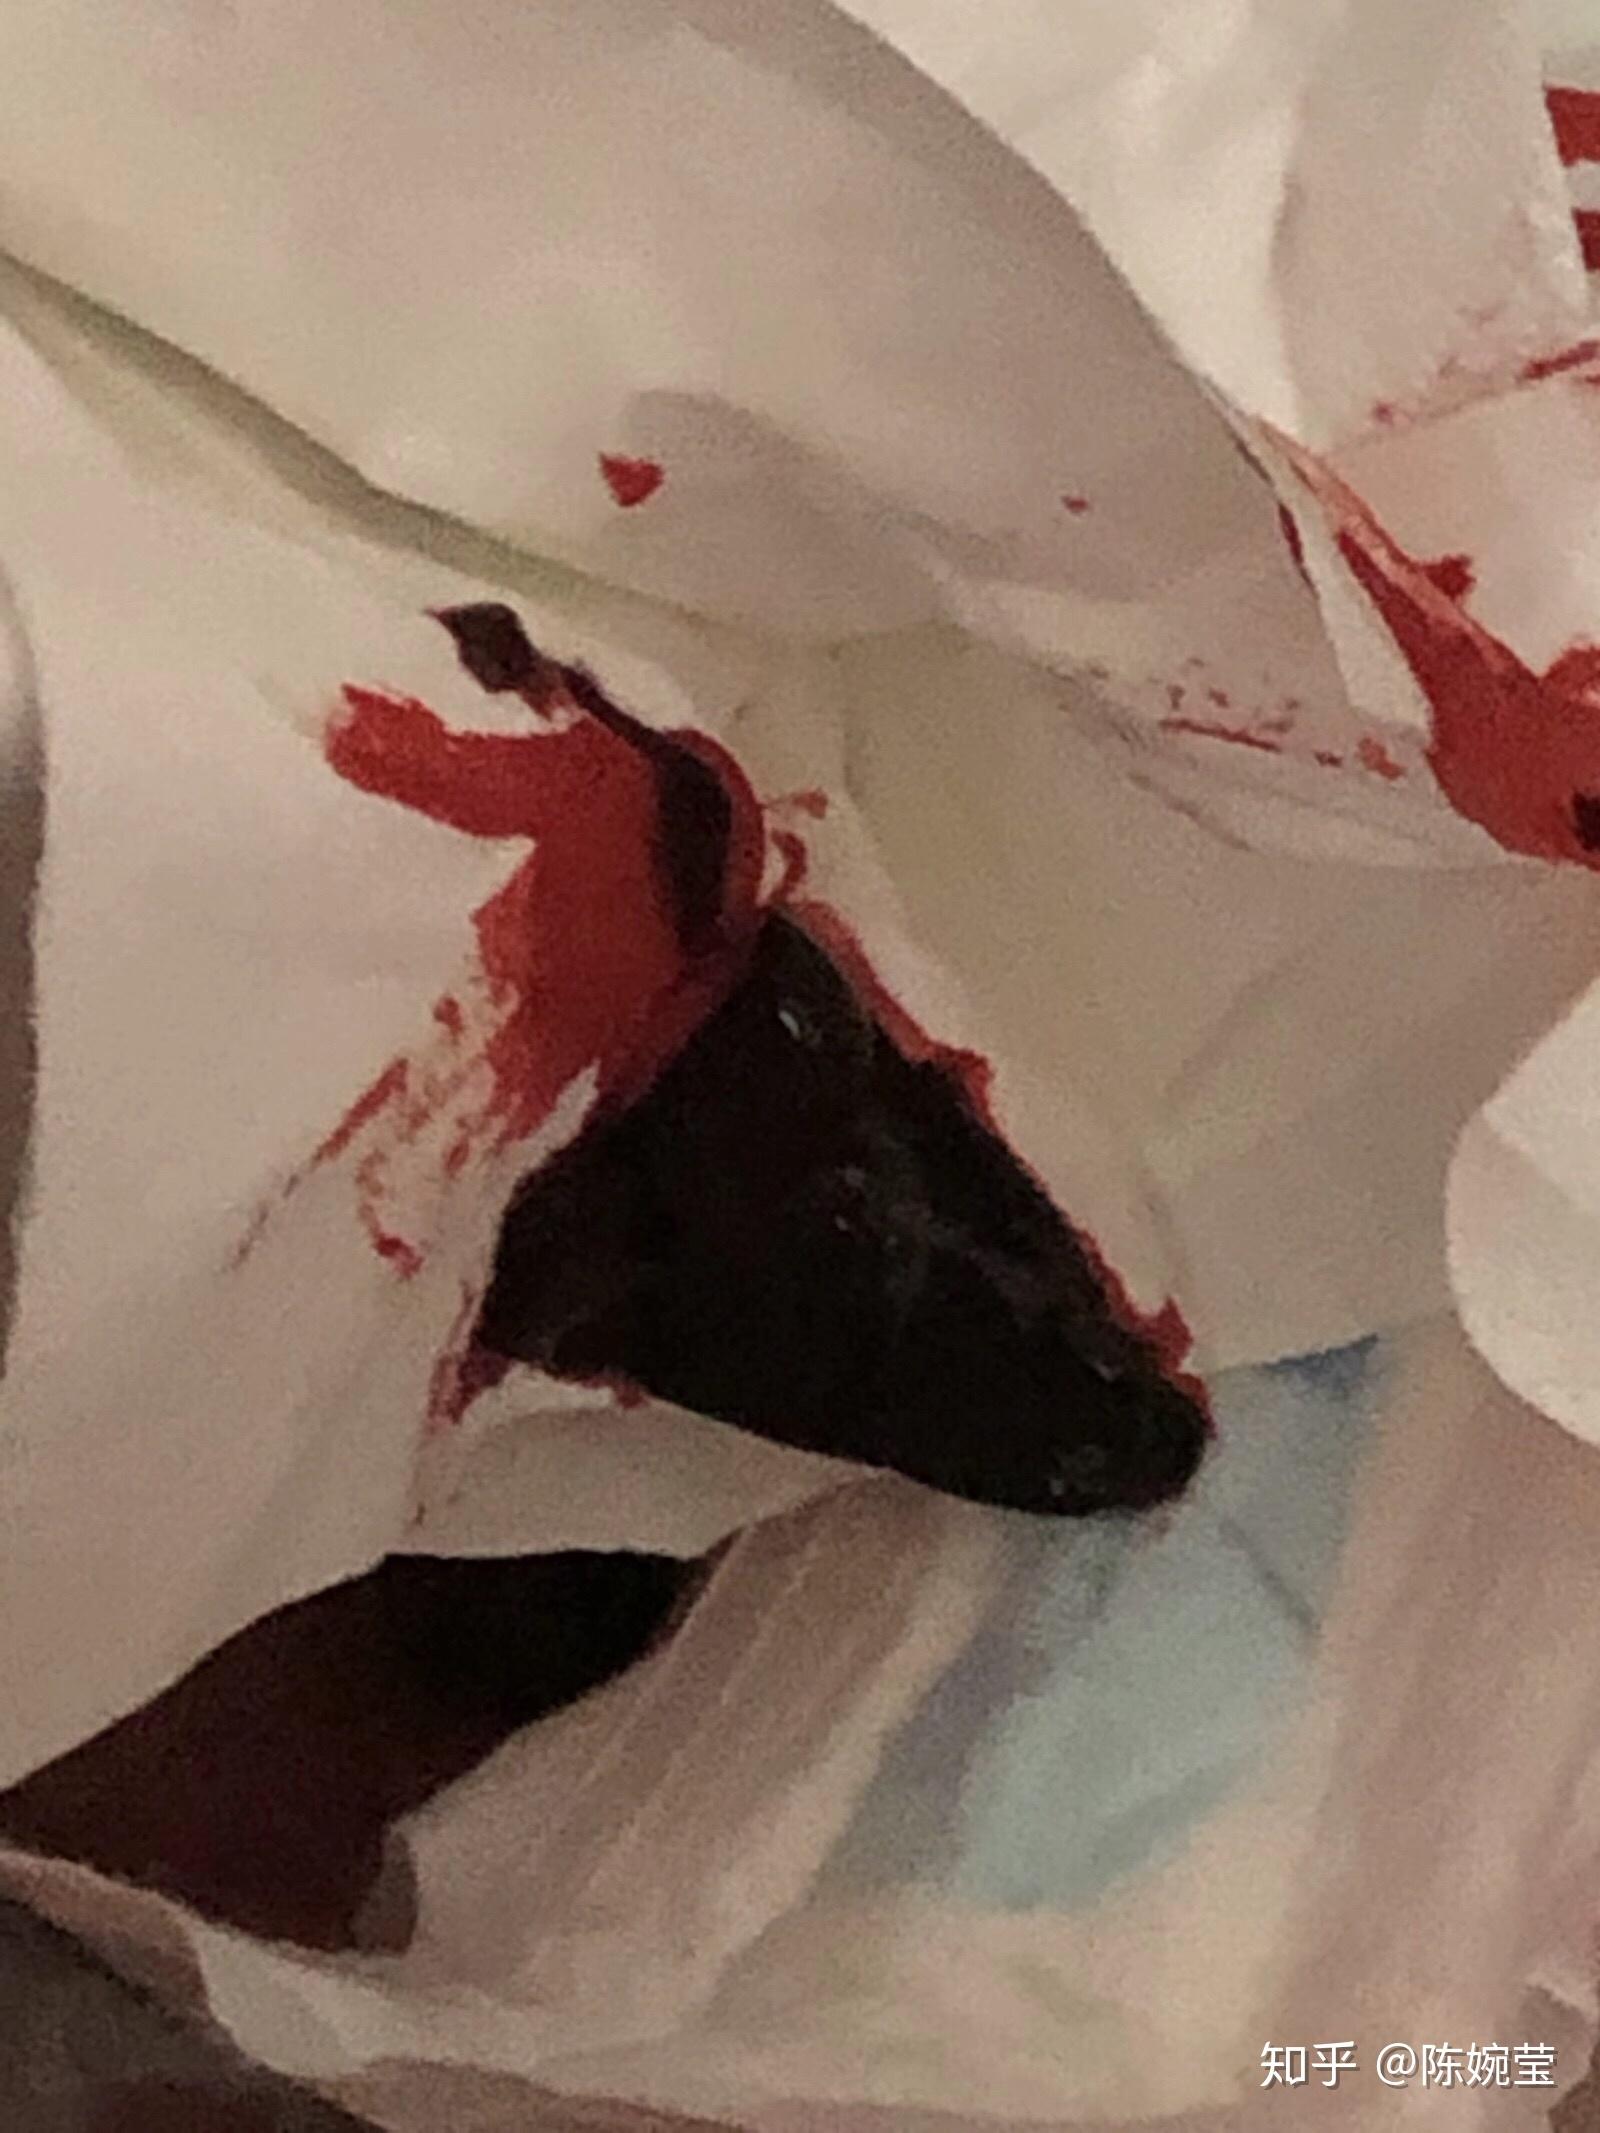 流产在地上血的照片图片